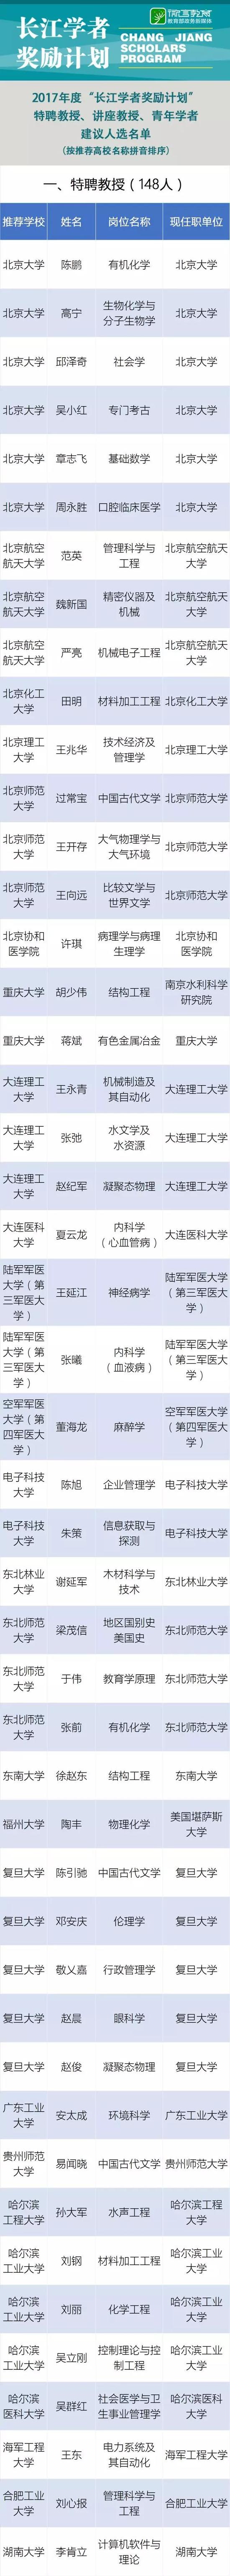 教育部网站:2017年度长江学者建议人选名单公示 共463名